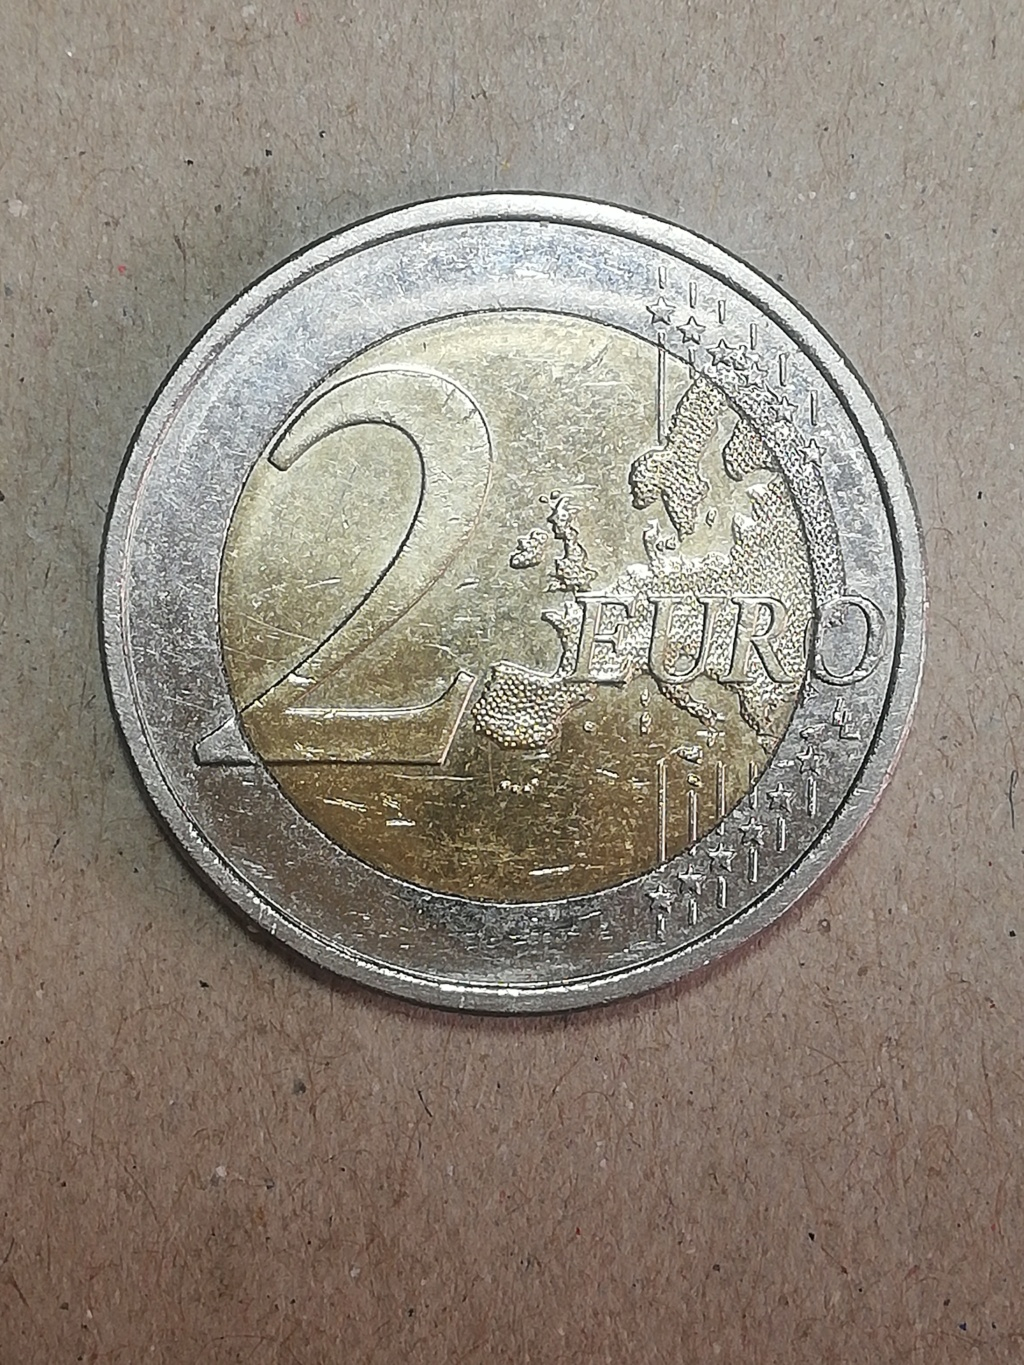 2 euros Finlandia 2020 Img_2489